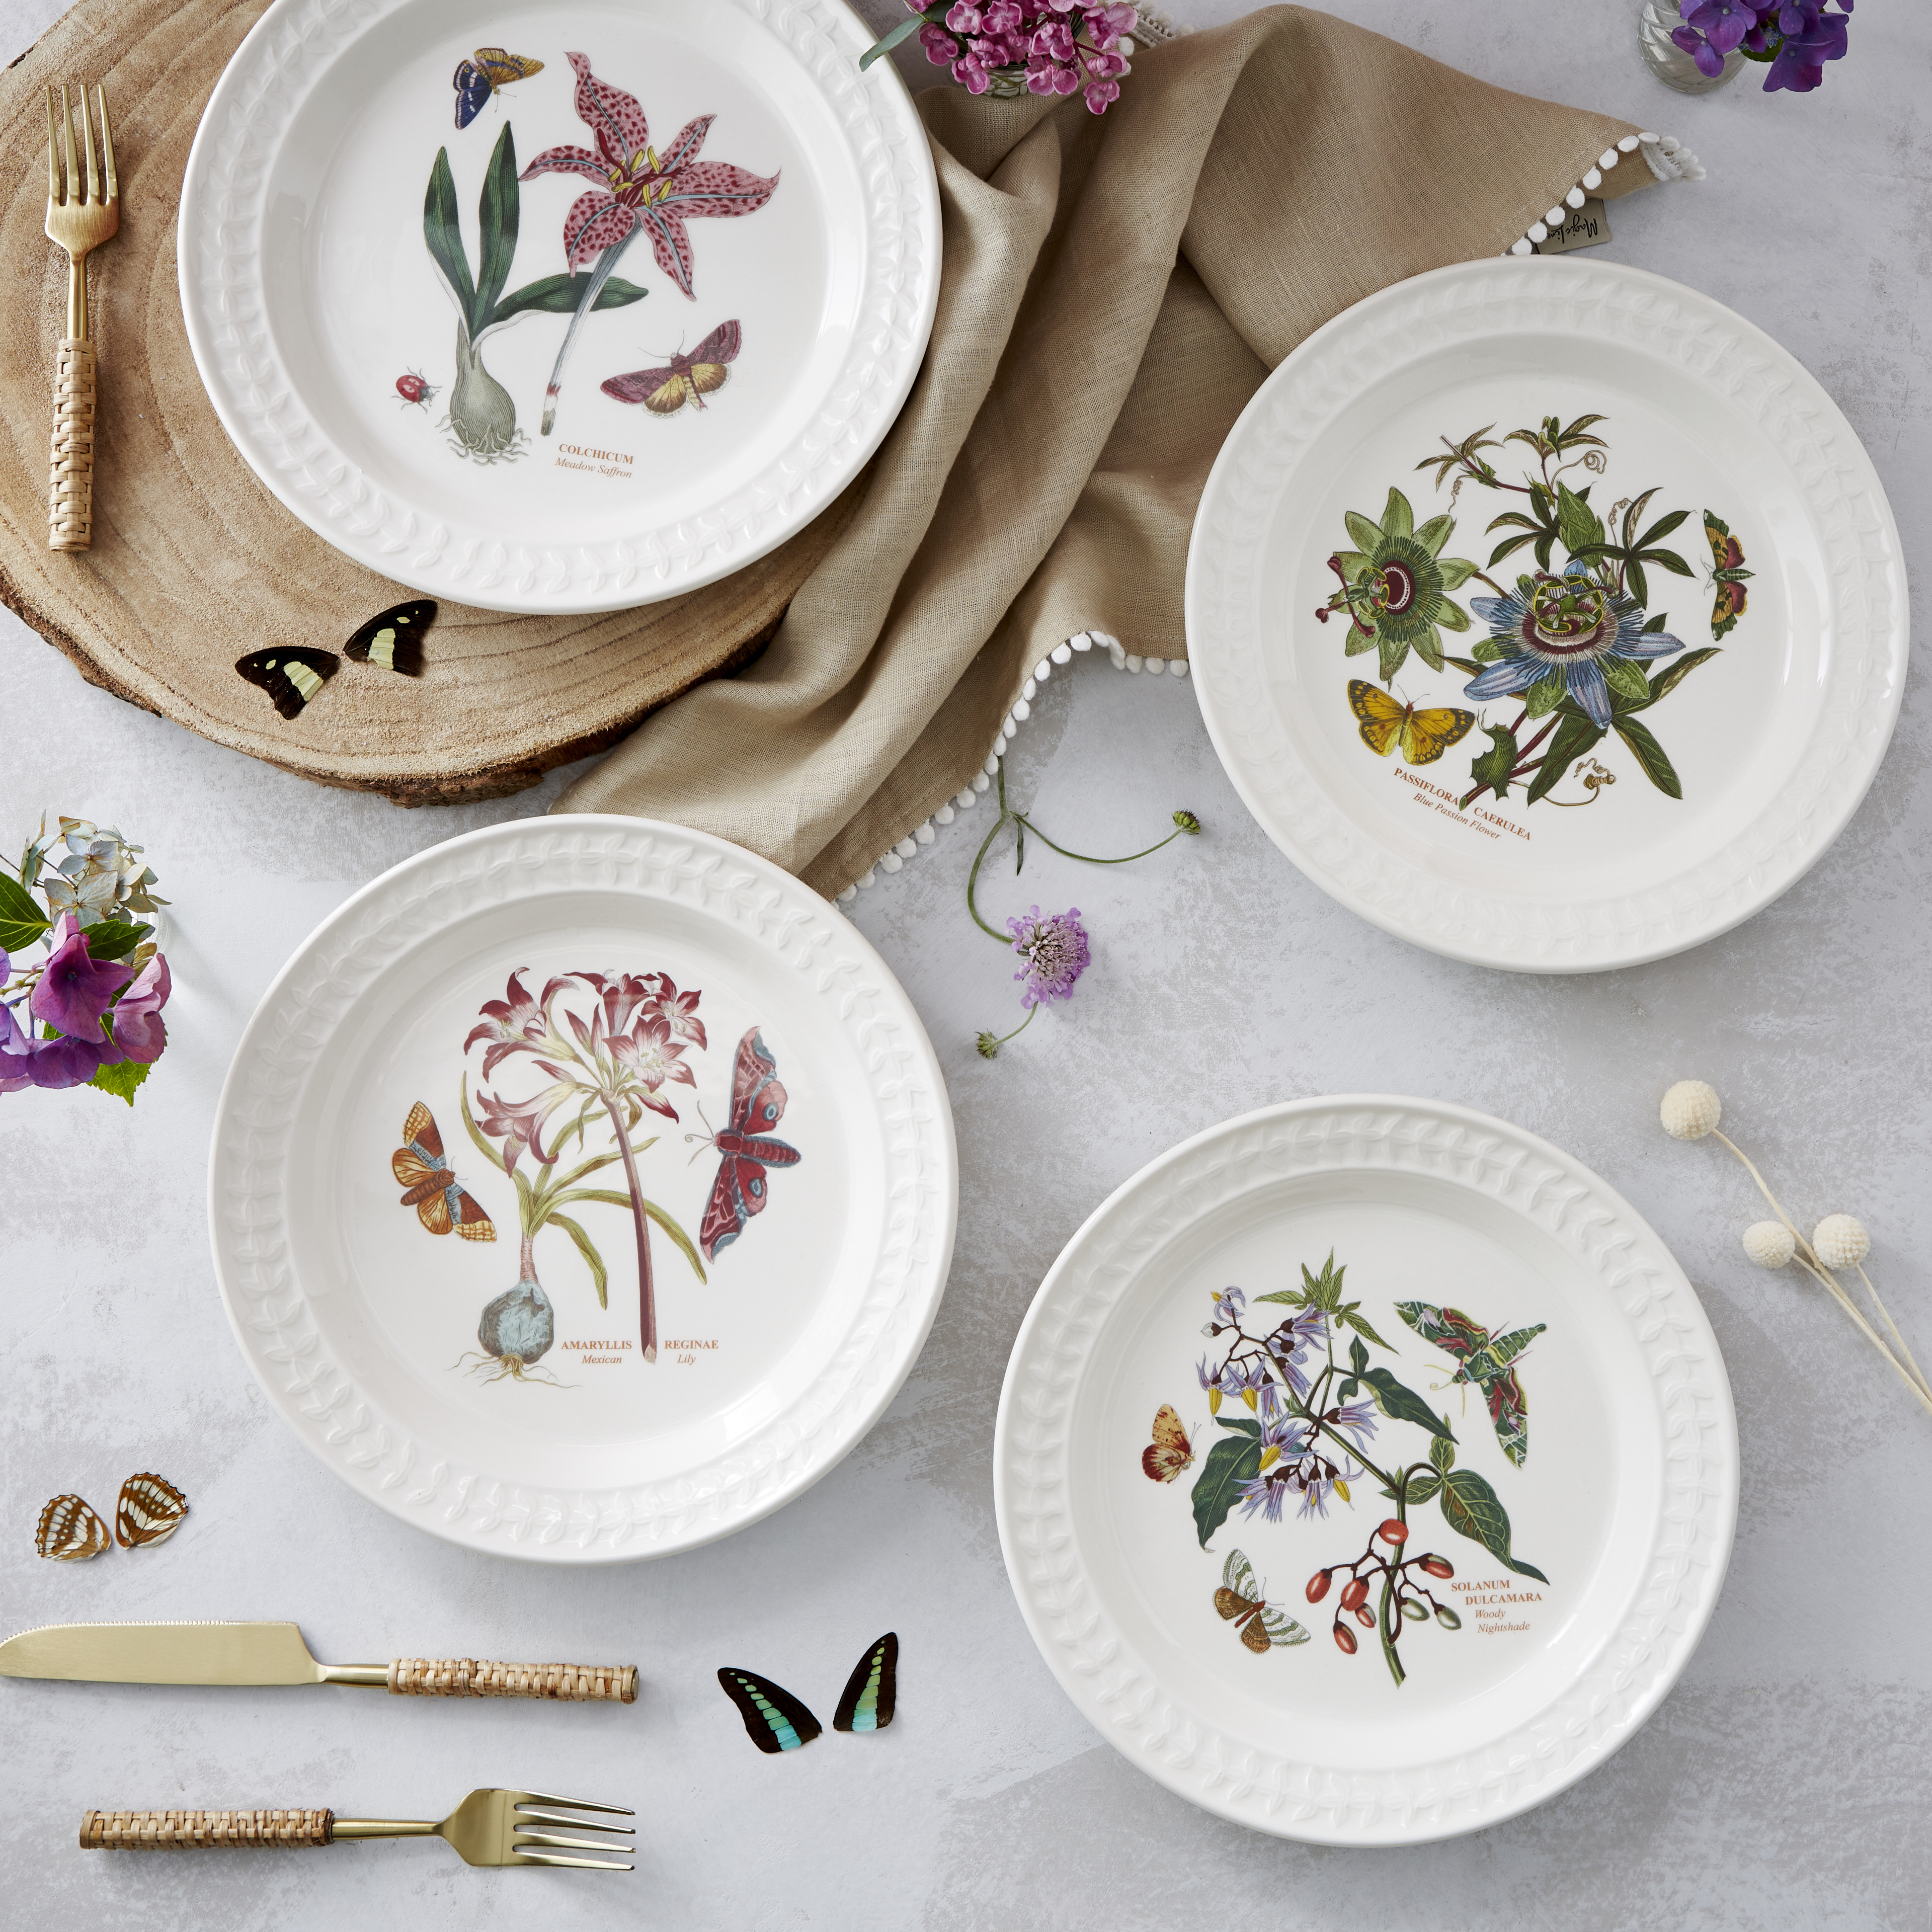 Portmeirion® Botanic Garden Side Plate - Set of 4